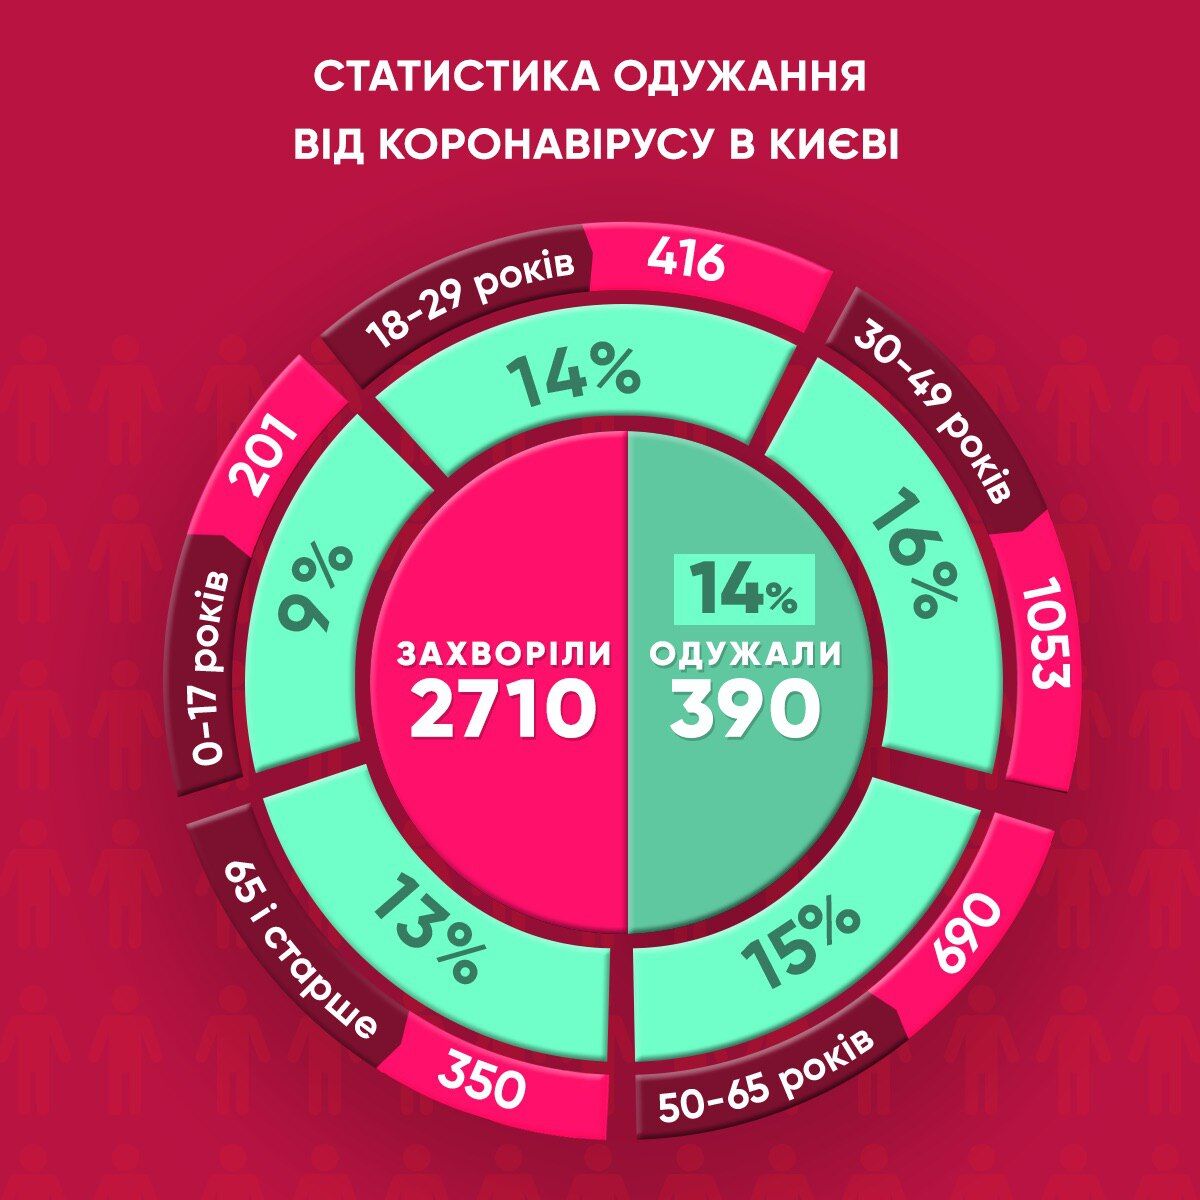 Статистика заболеваемости коронавирусом в Киеве по состоянию на 26 мая